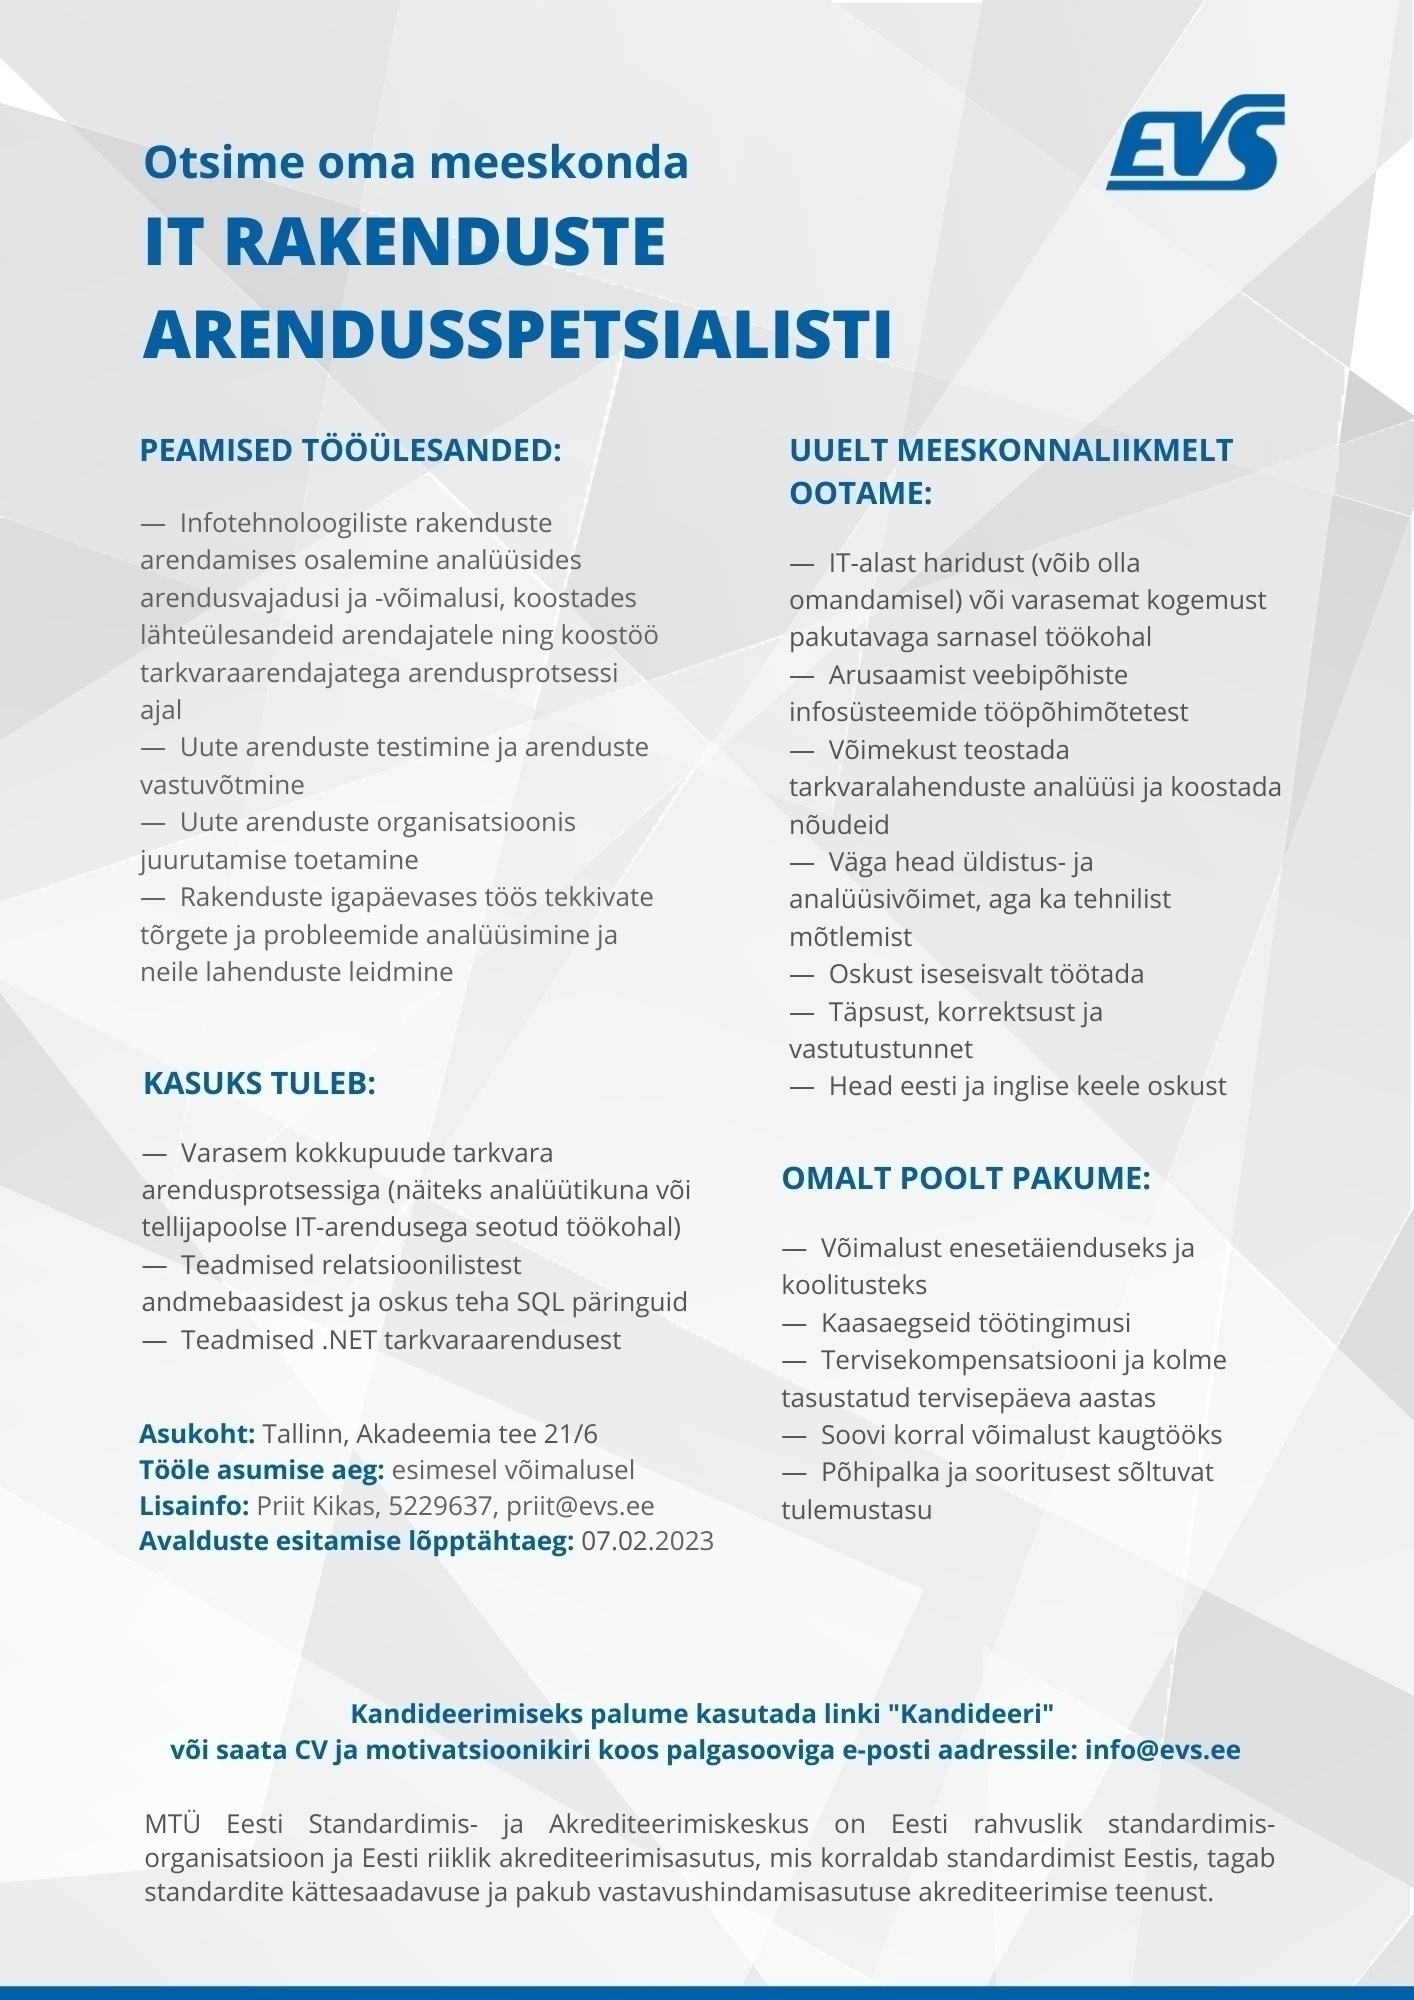 Mittetulundusühing Eesti Standardimis- ja Akrediteerimiskeskus IT rakenduste arendusspetsialist